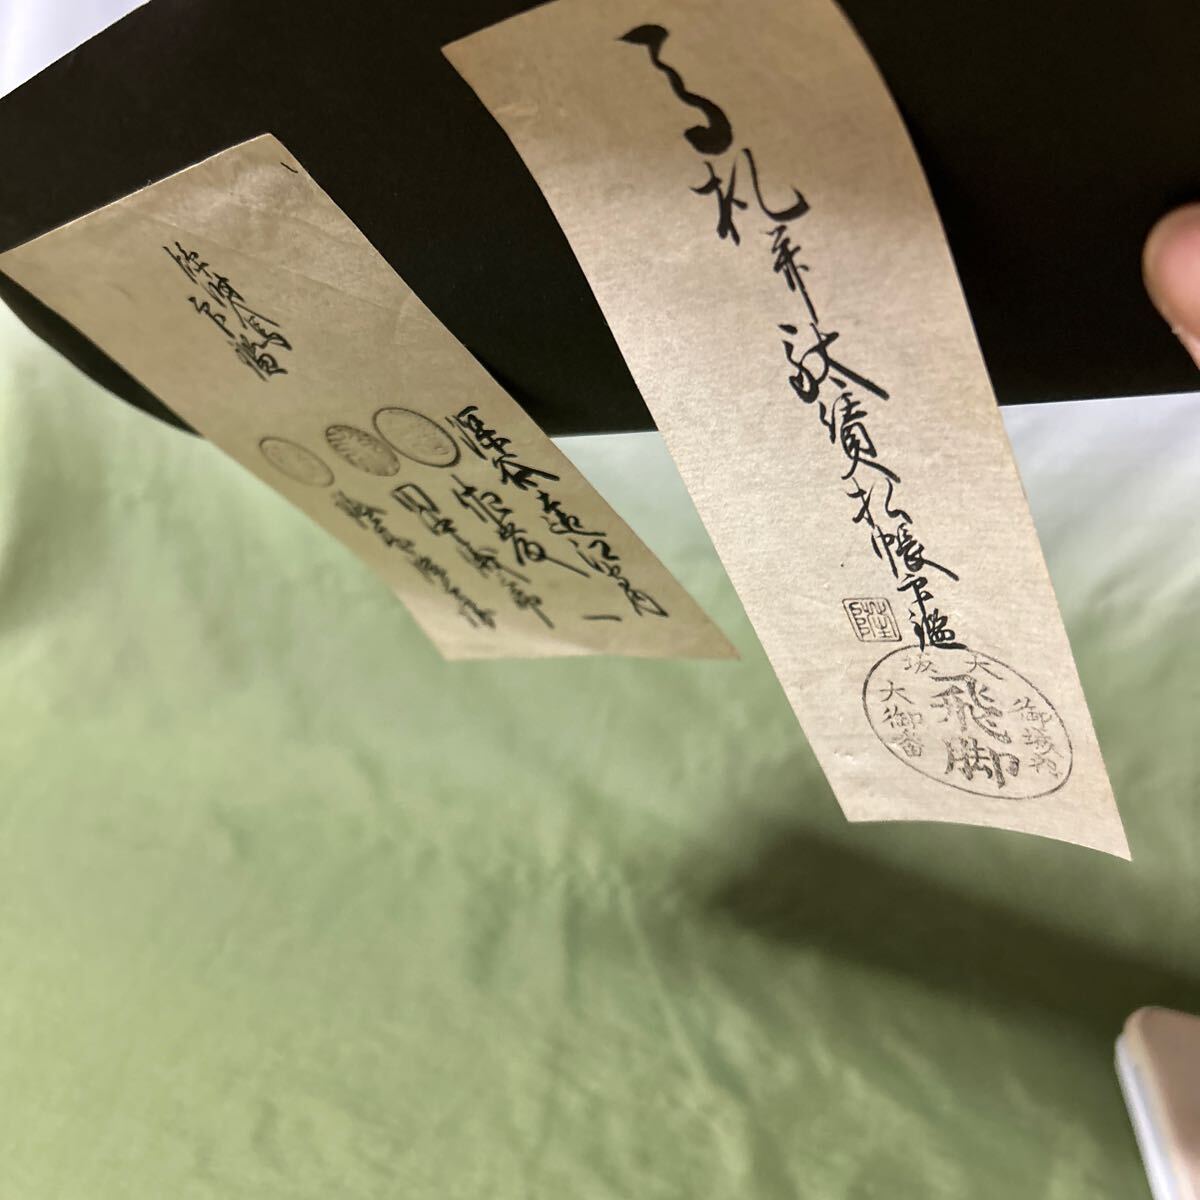 [3814A4] курьер Osaka . замок внутри большой . номер .. платить . старый документ материалы коллекция 